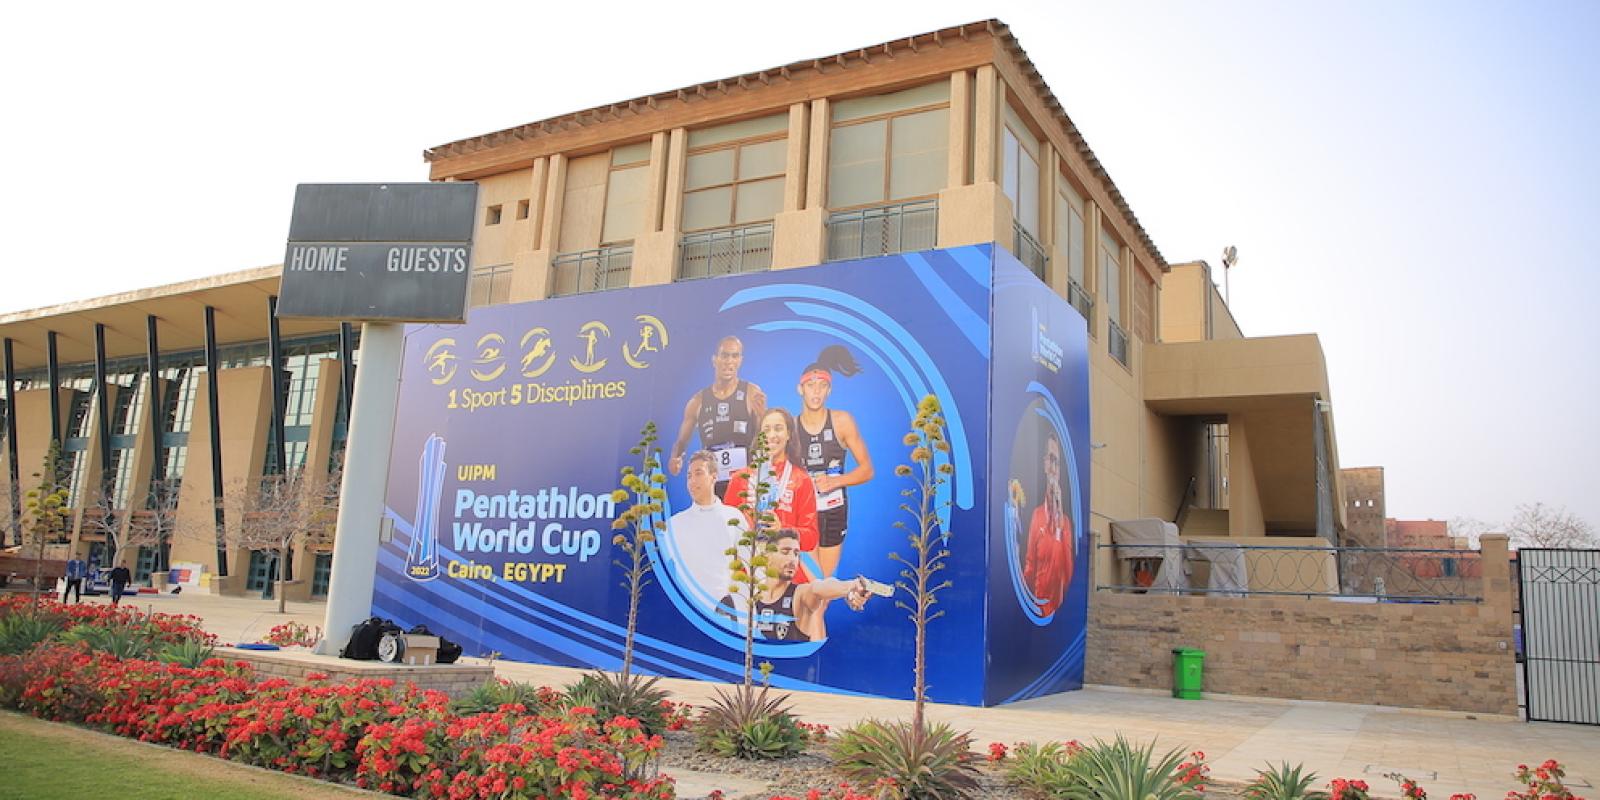 UIPM Pentathlon World Cup, Cairo, Egypt, 1 sport, 5 disciplines